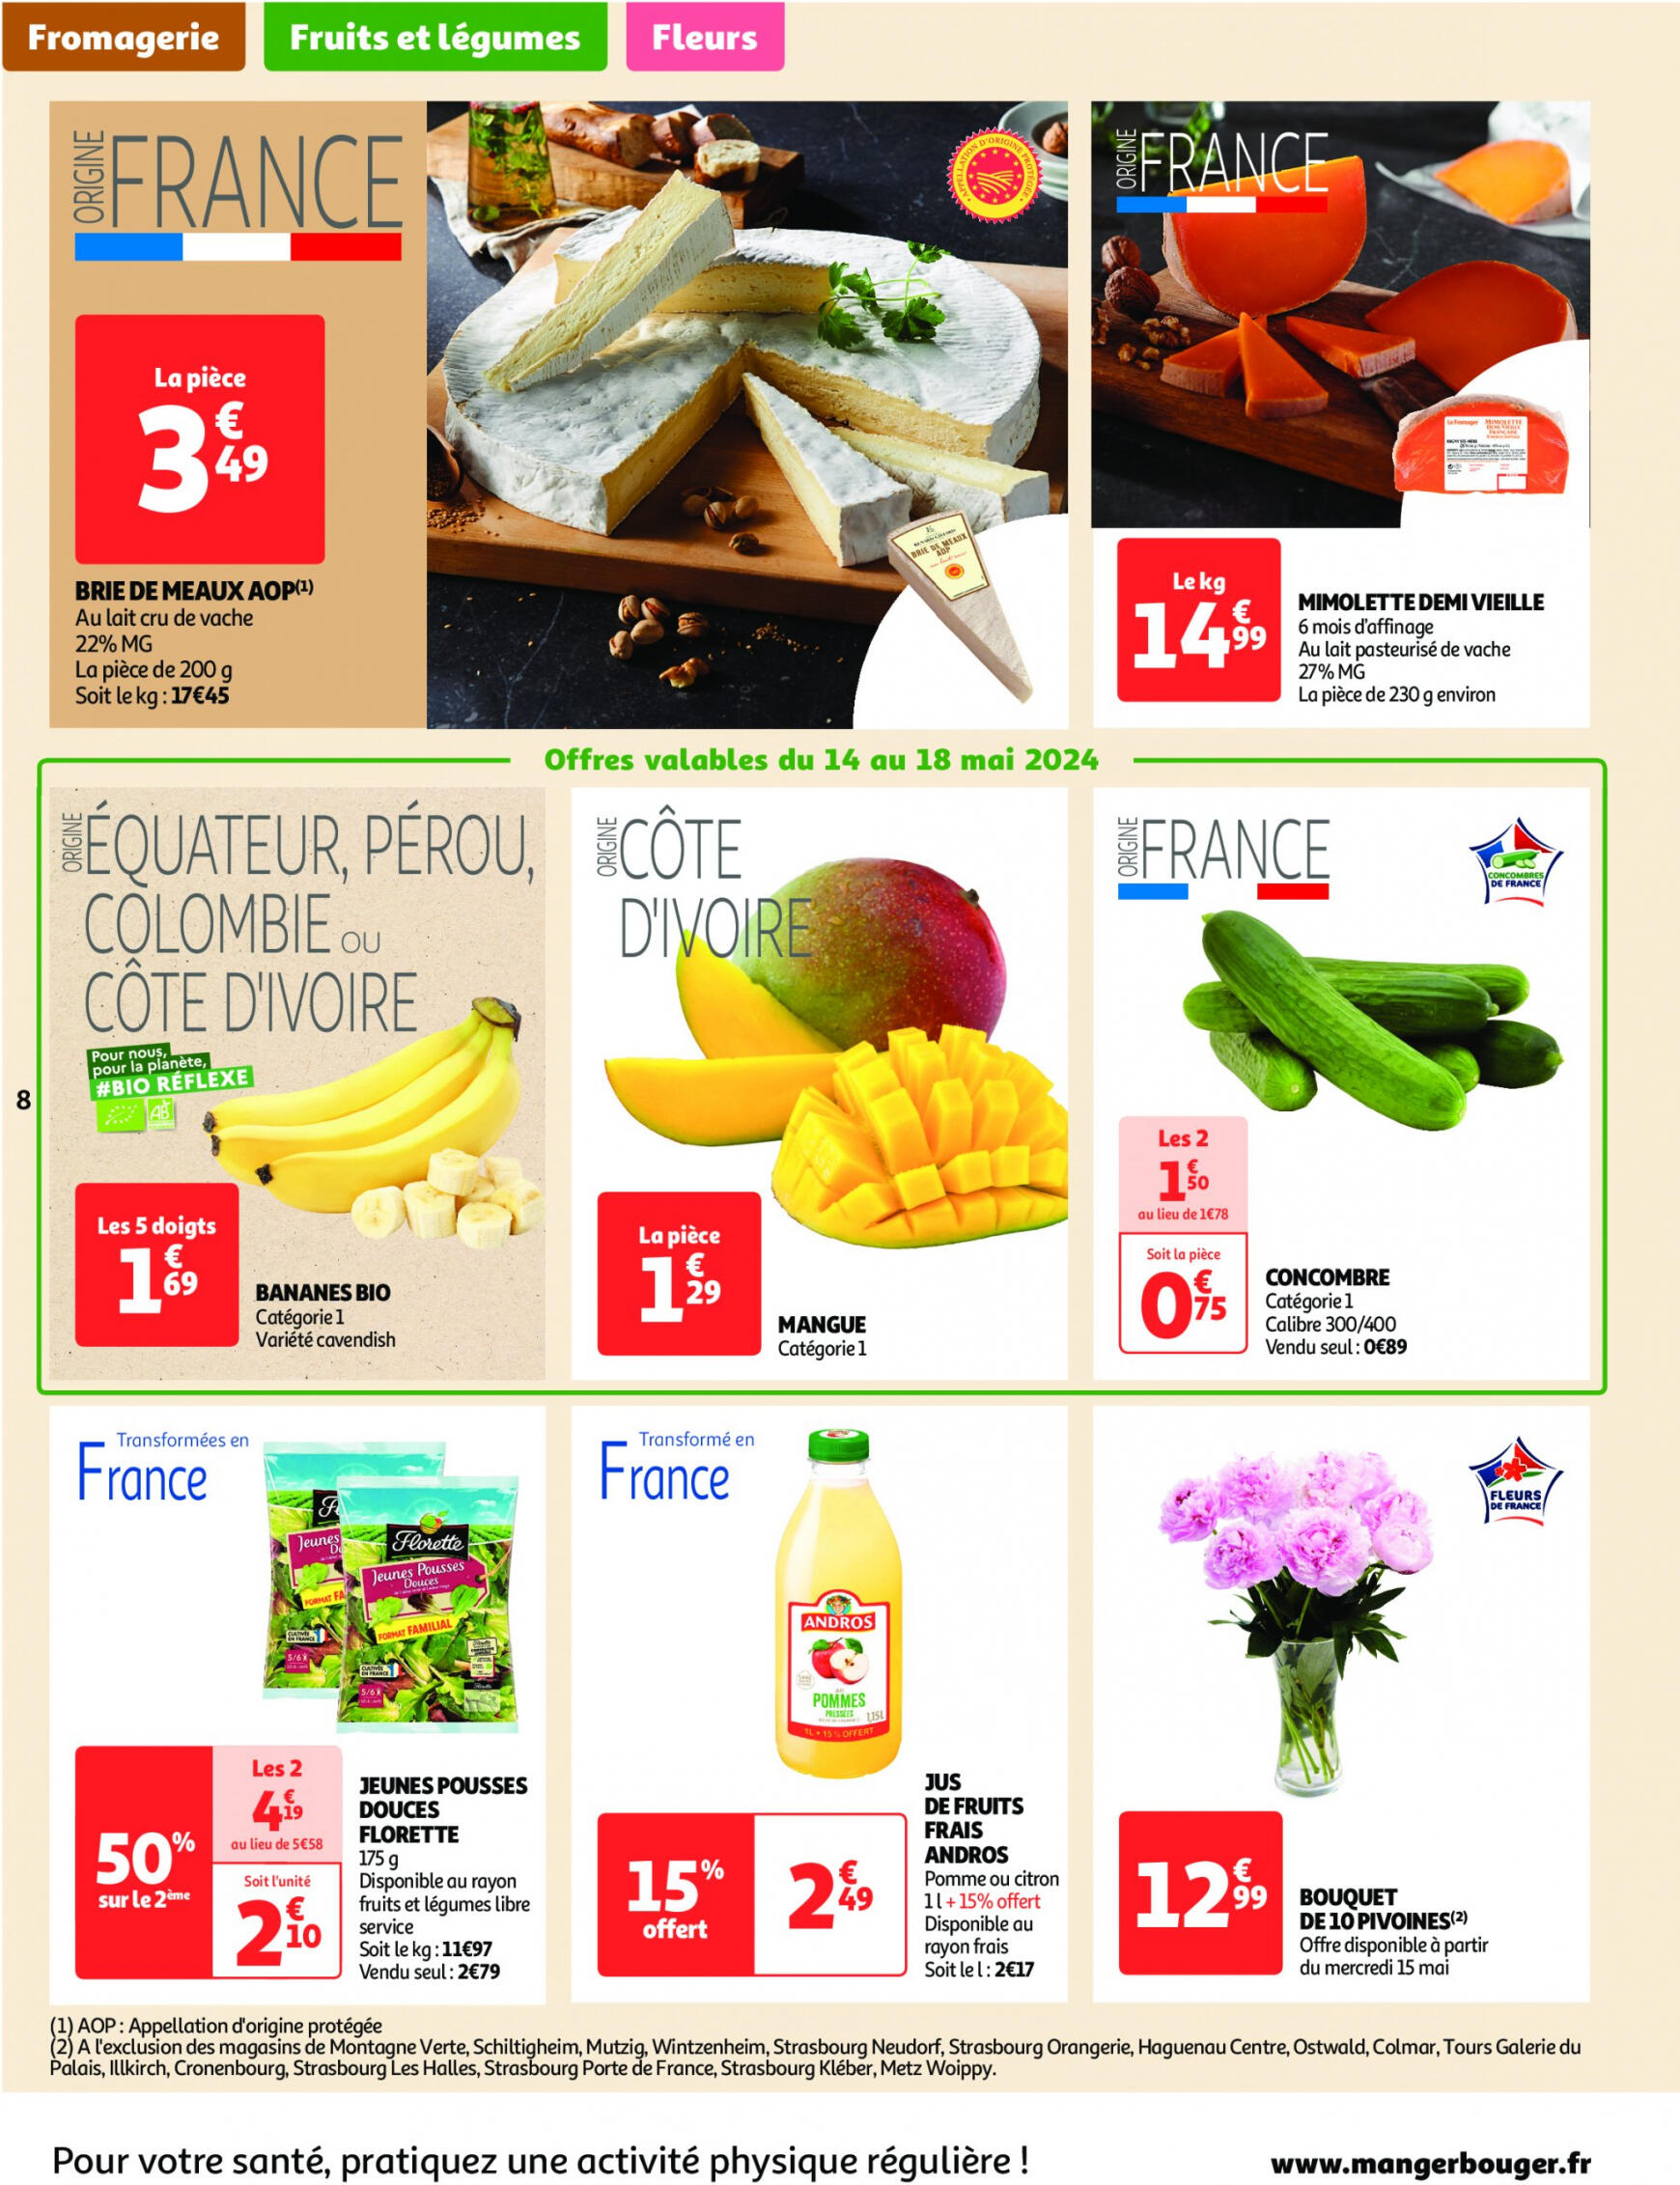 auchan - Auchan - On met le turbot sur les produits de la mer folder huidig 14.05. - 19.05. - page: 8